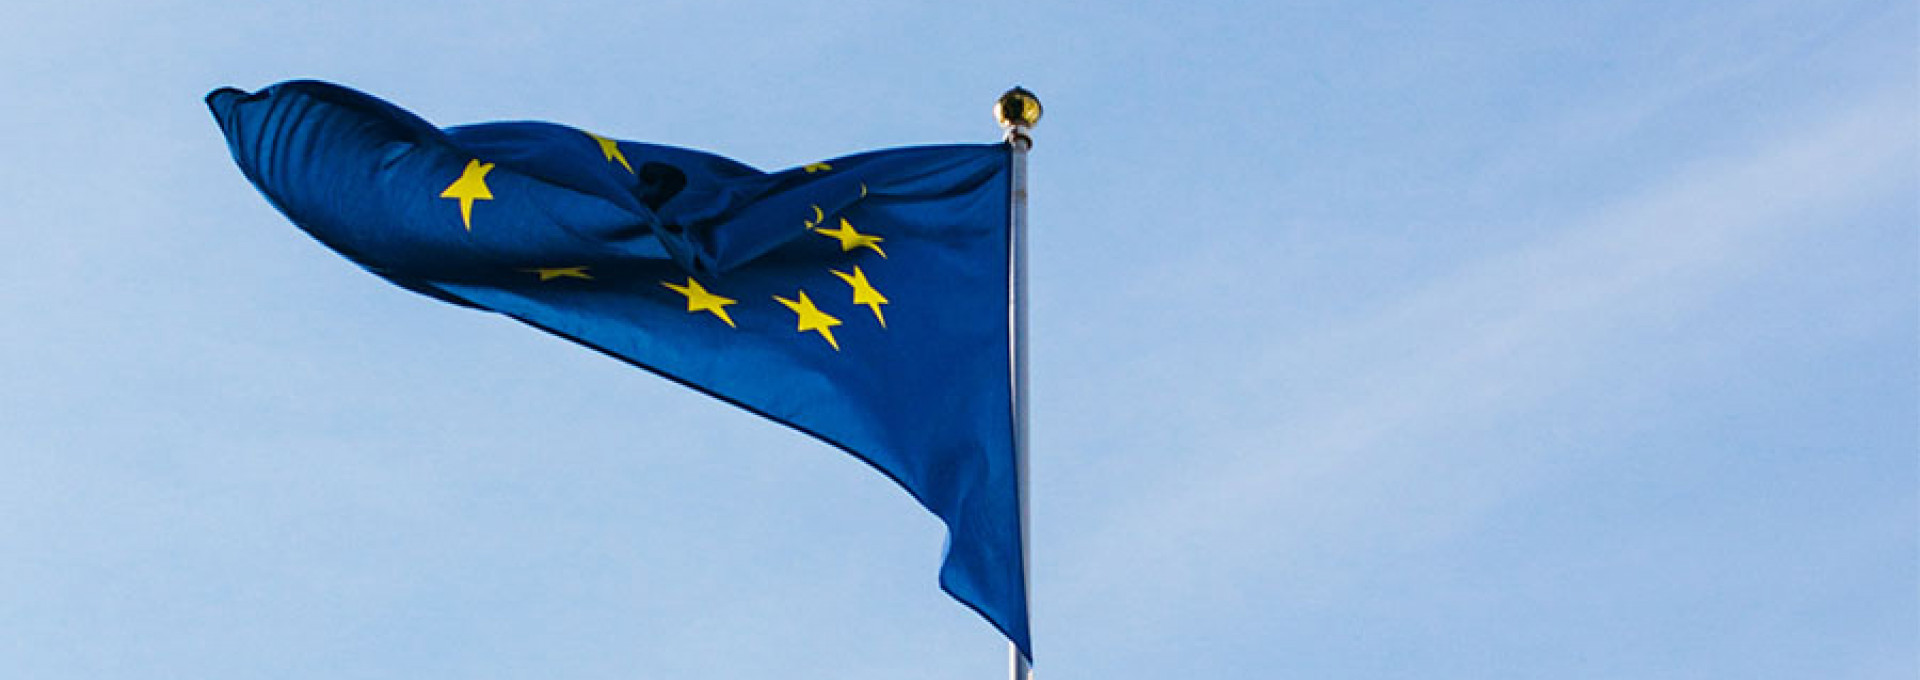 EU-Flagge vor blauem Himmel